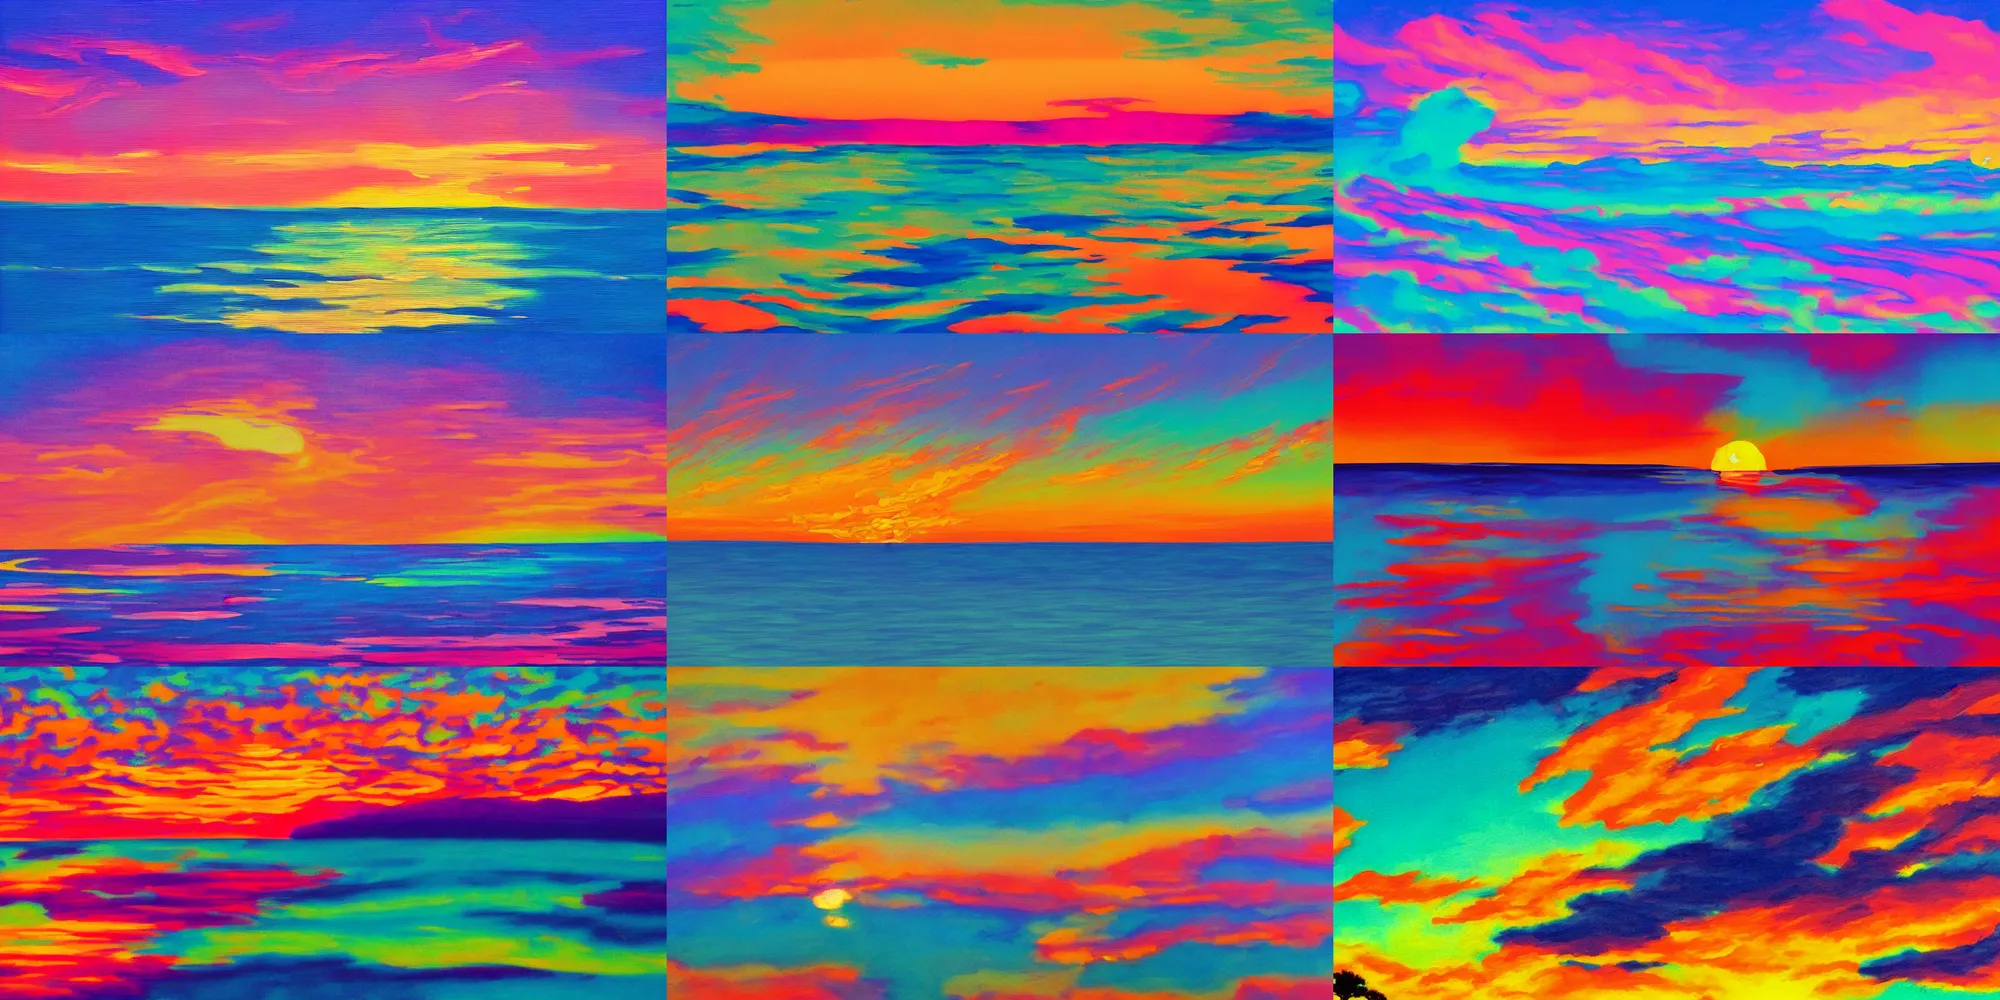 Prompt: guache painting of a vibrant color sunset, vaporwave aesthetic, subtle